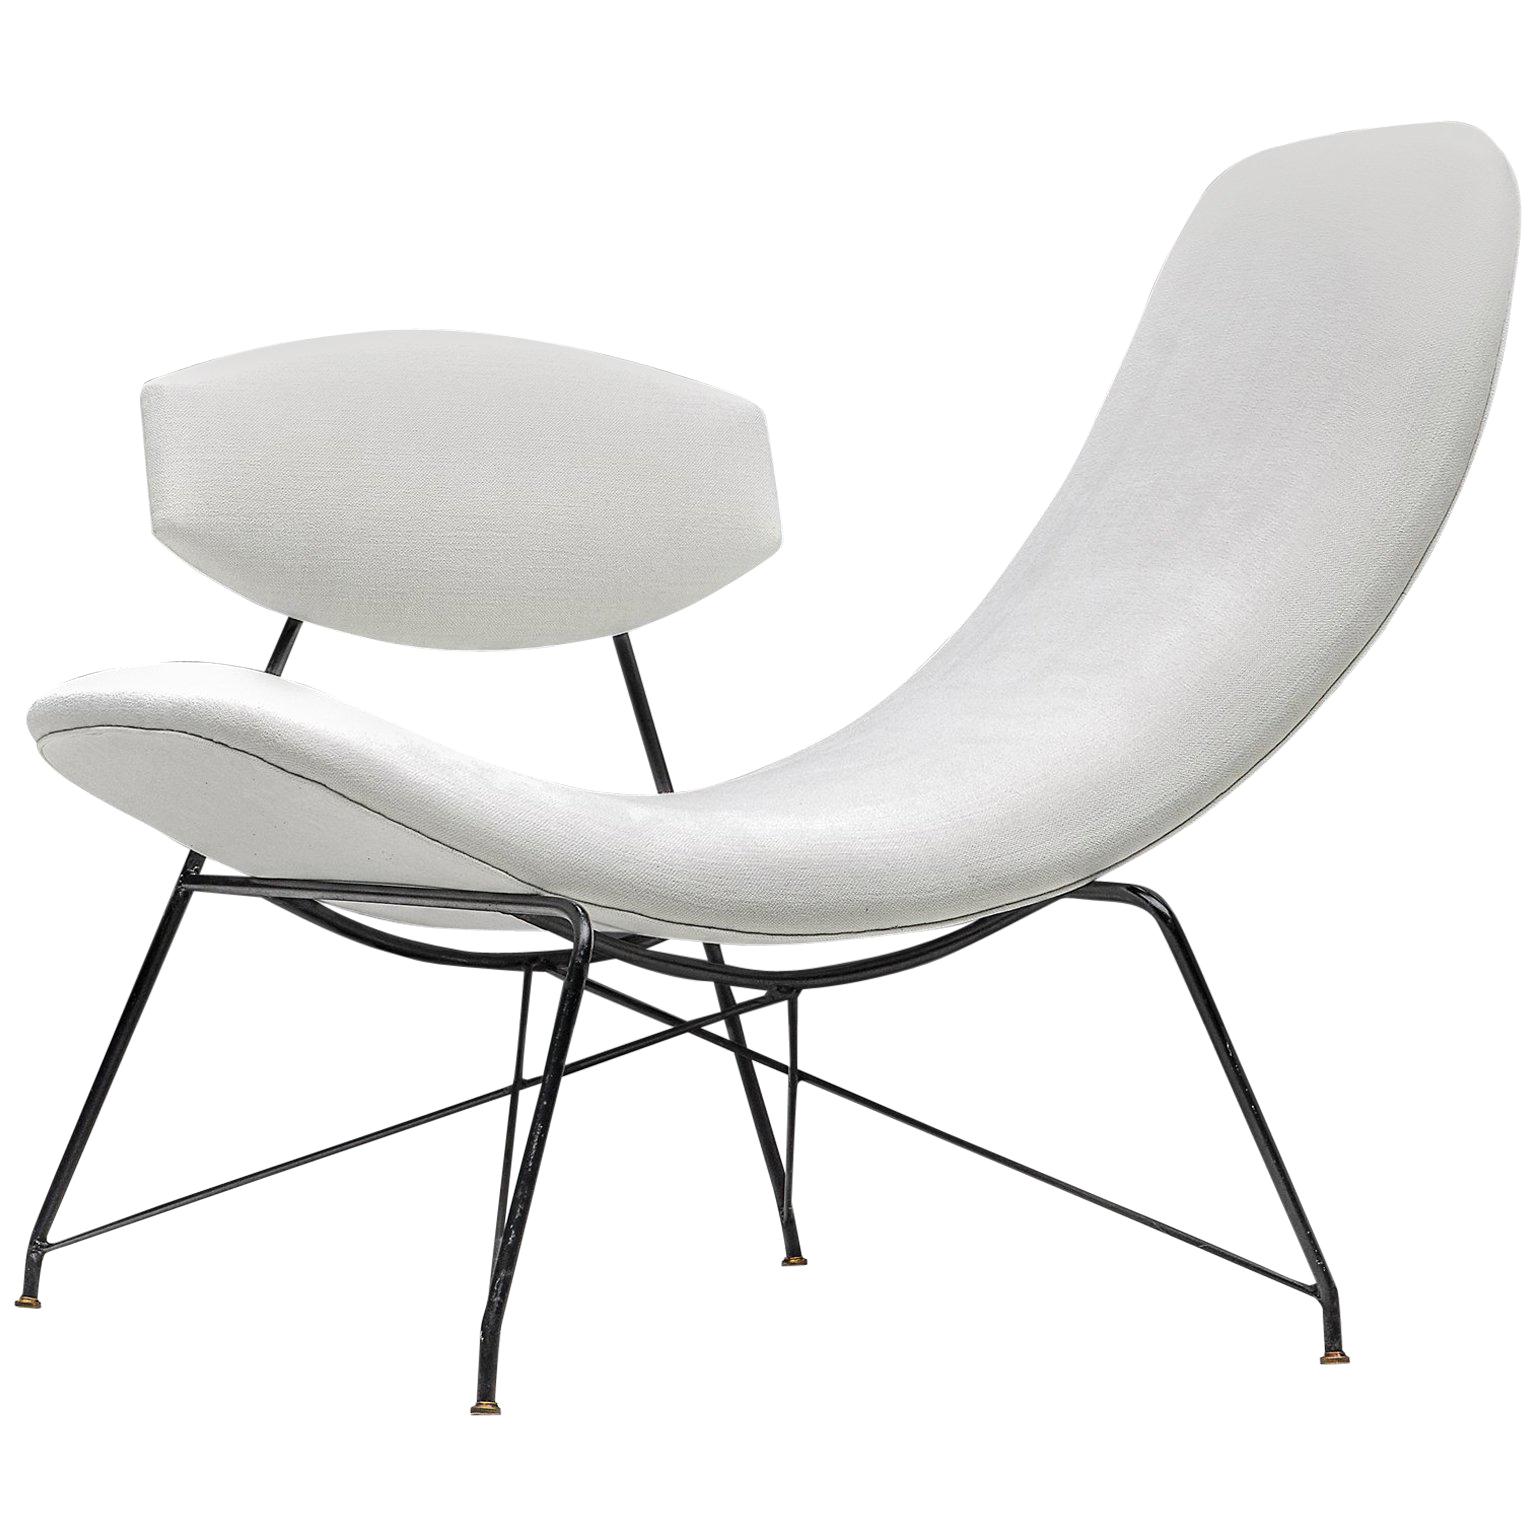 Martin Eisler Reversible Chair Reupholstered in White Linen